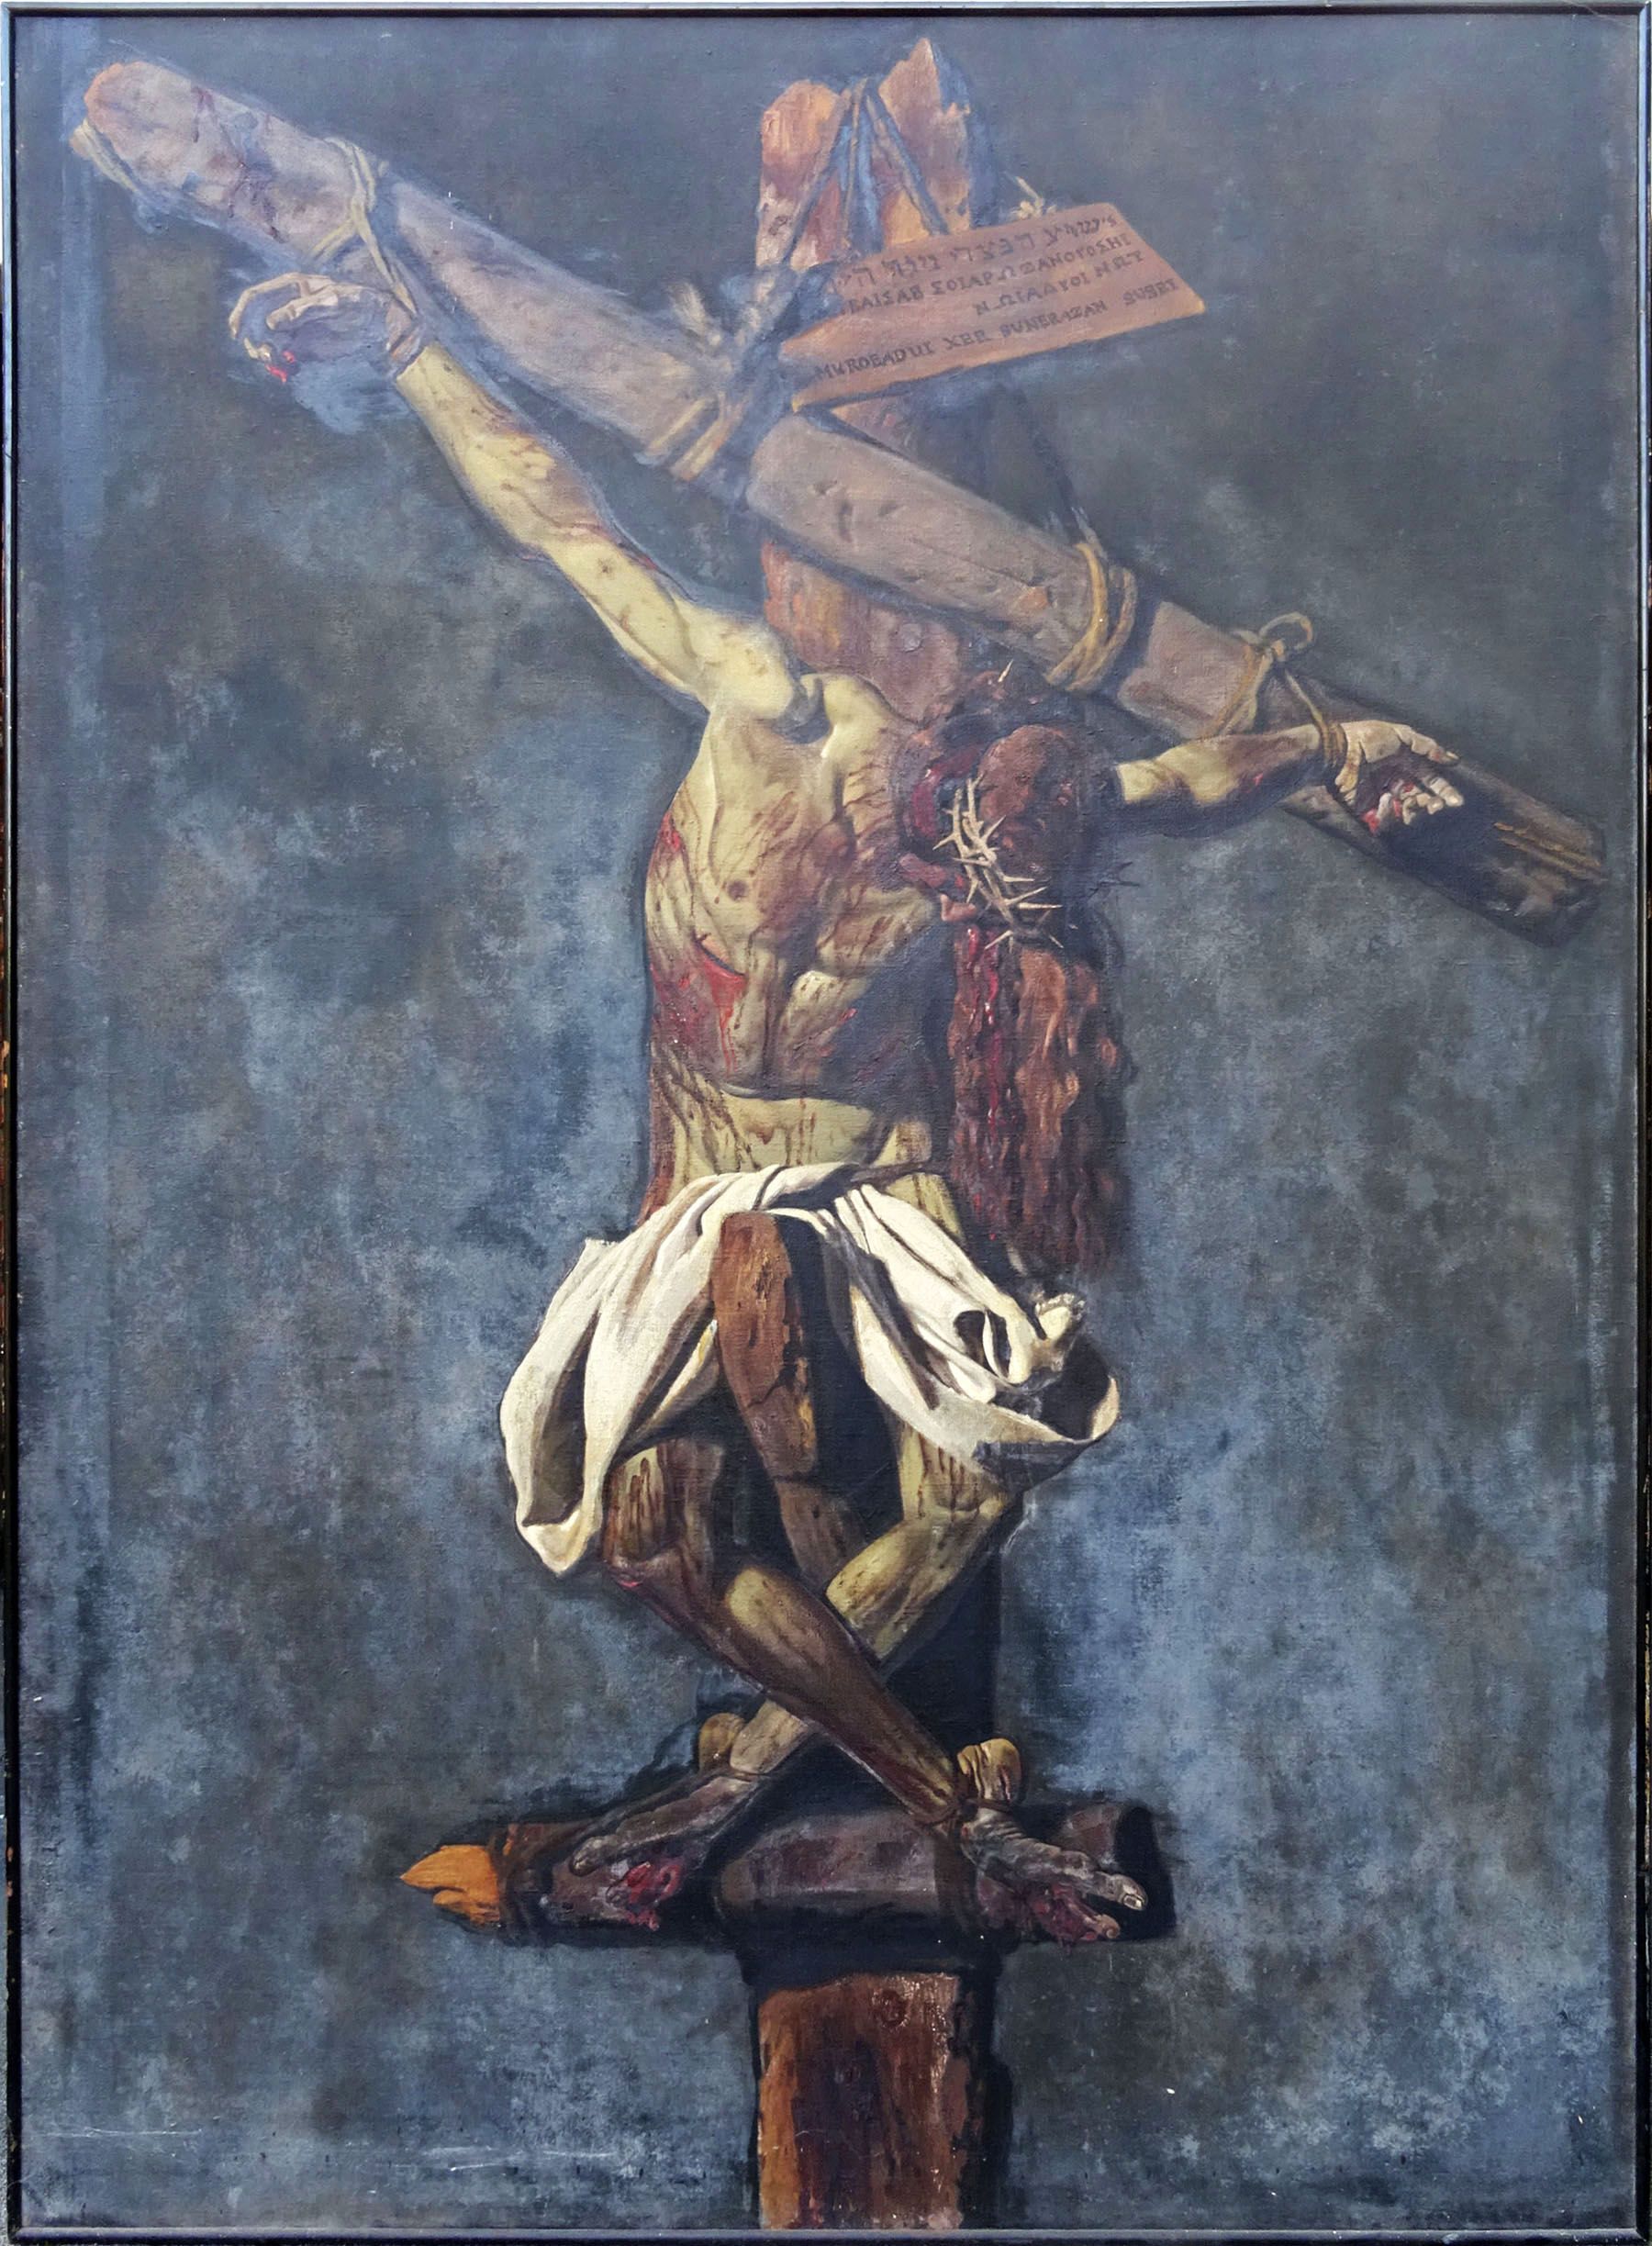 Sale a subasta la primera de las cuatro versiones del Cristo crucificado que pintó Benito Prieto Coussent